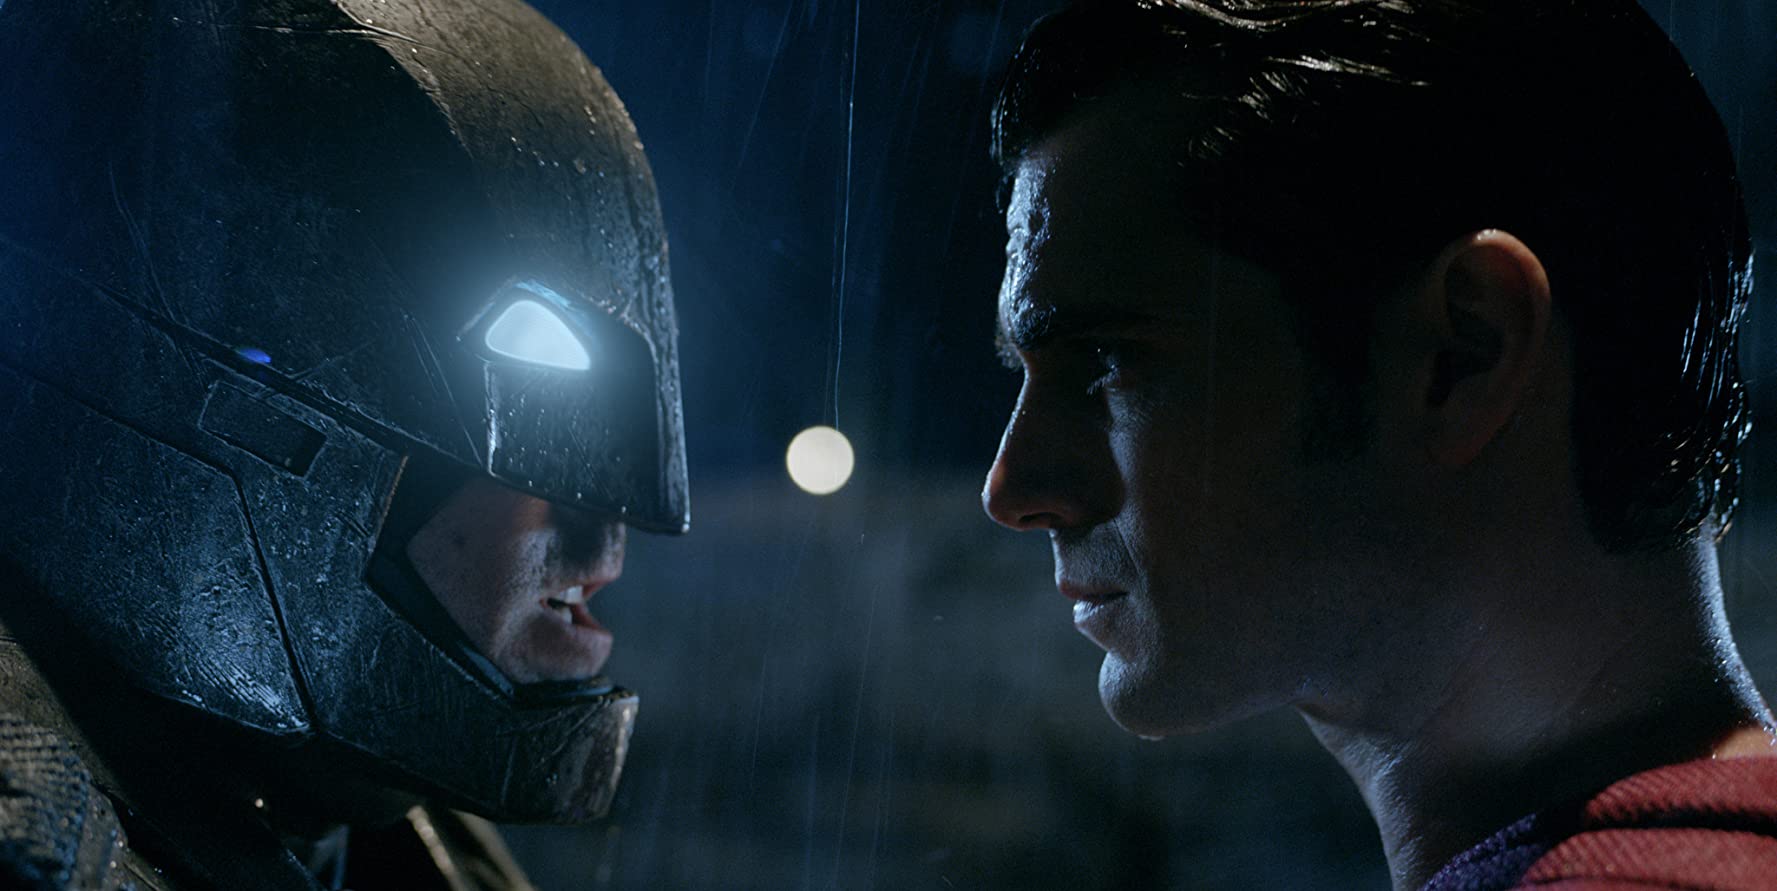 Kỷ niệm 4 năm ngày phát hành Batman vs Superman: Dawn of Justice. Bom tấn  gần 900 triệu đô và tranh cãi trái chiều 